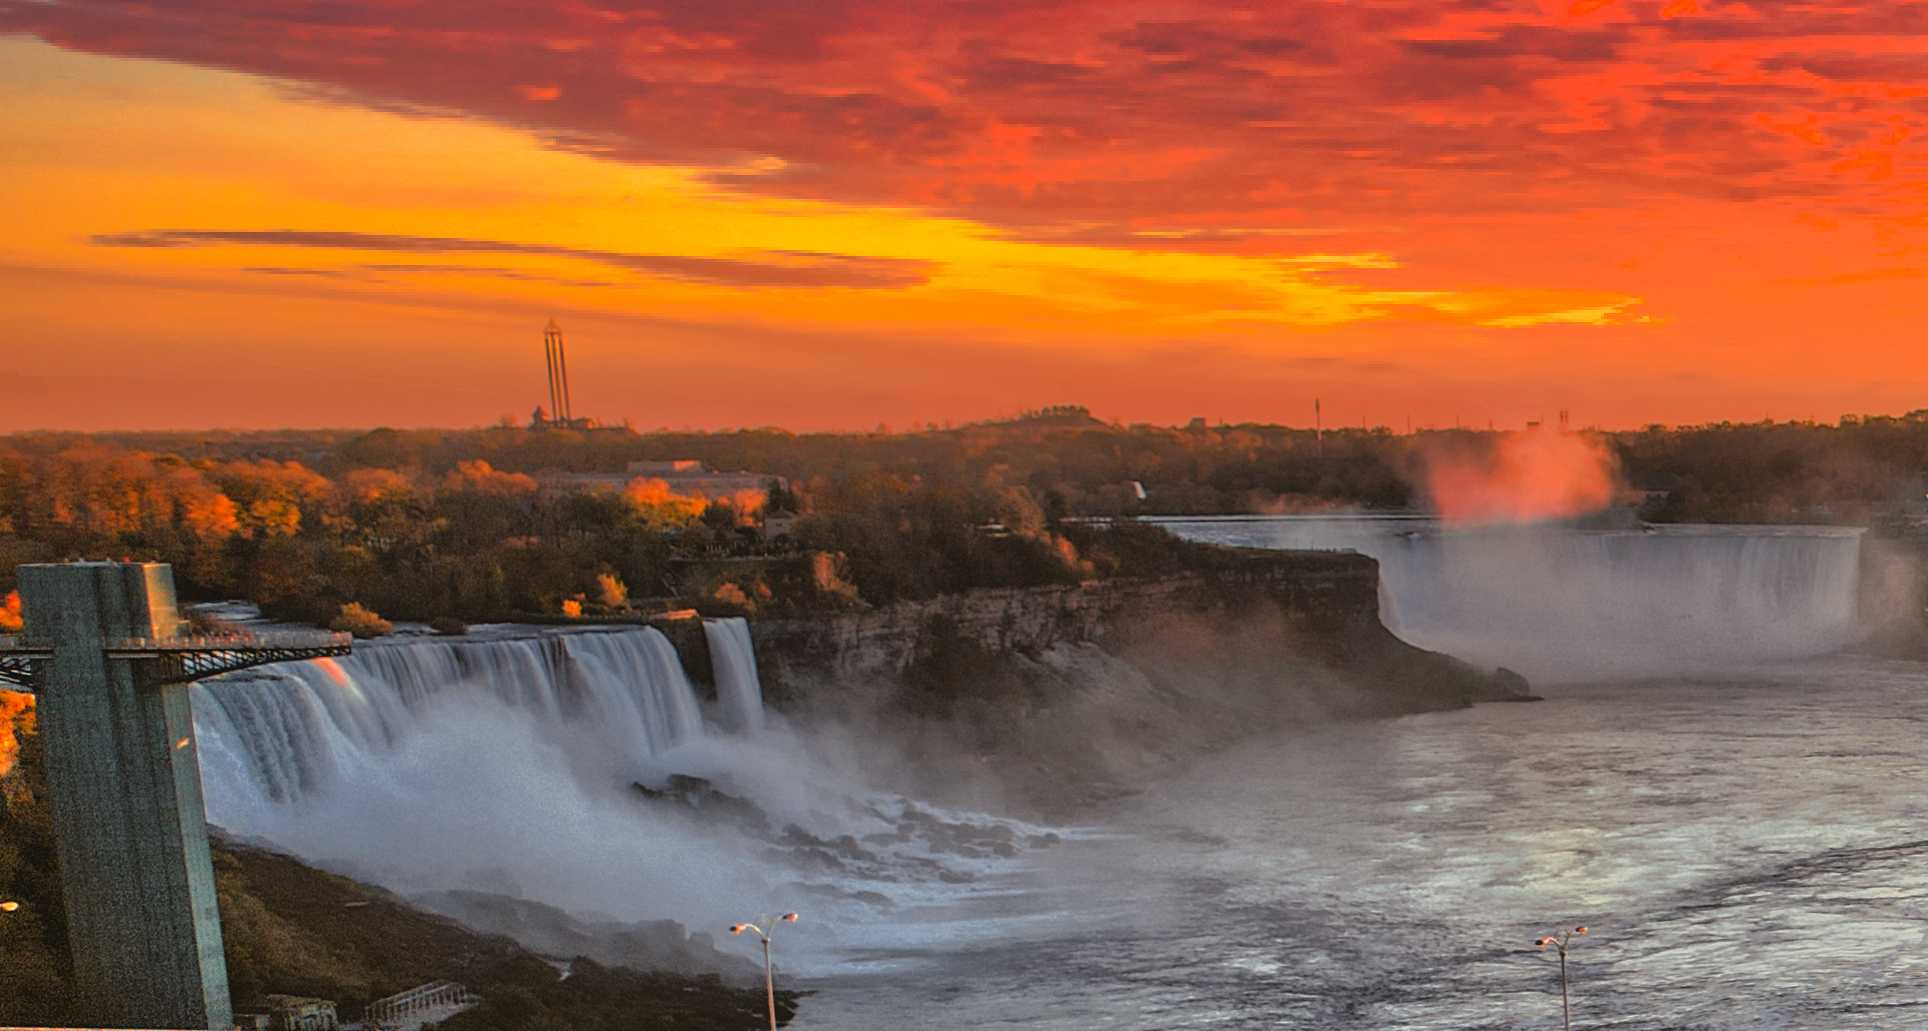 Top tips for visiting Niagara Falls in America